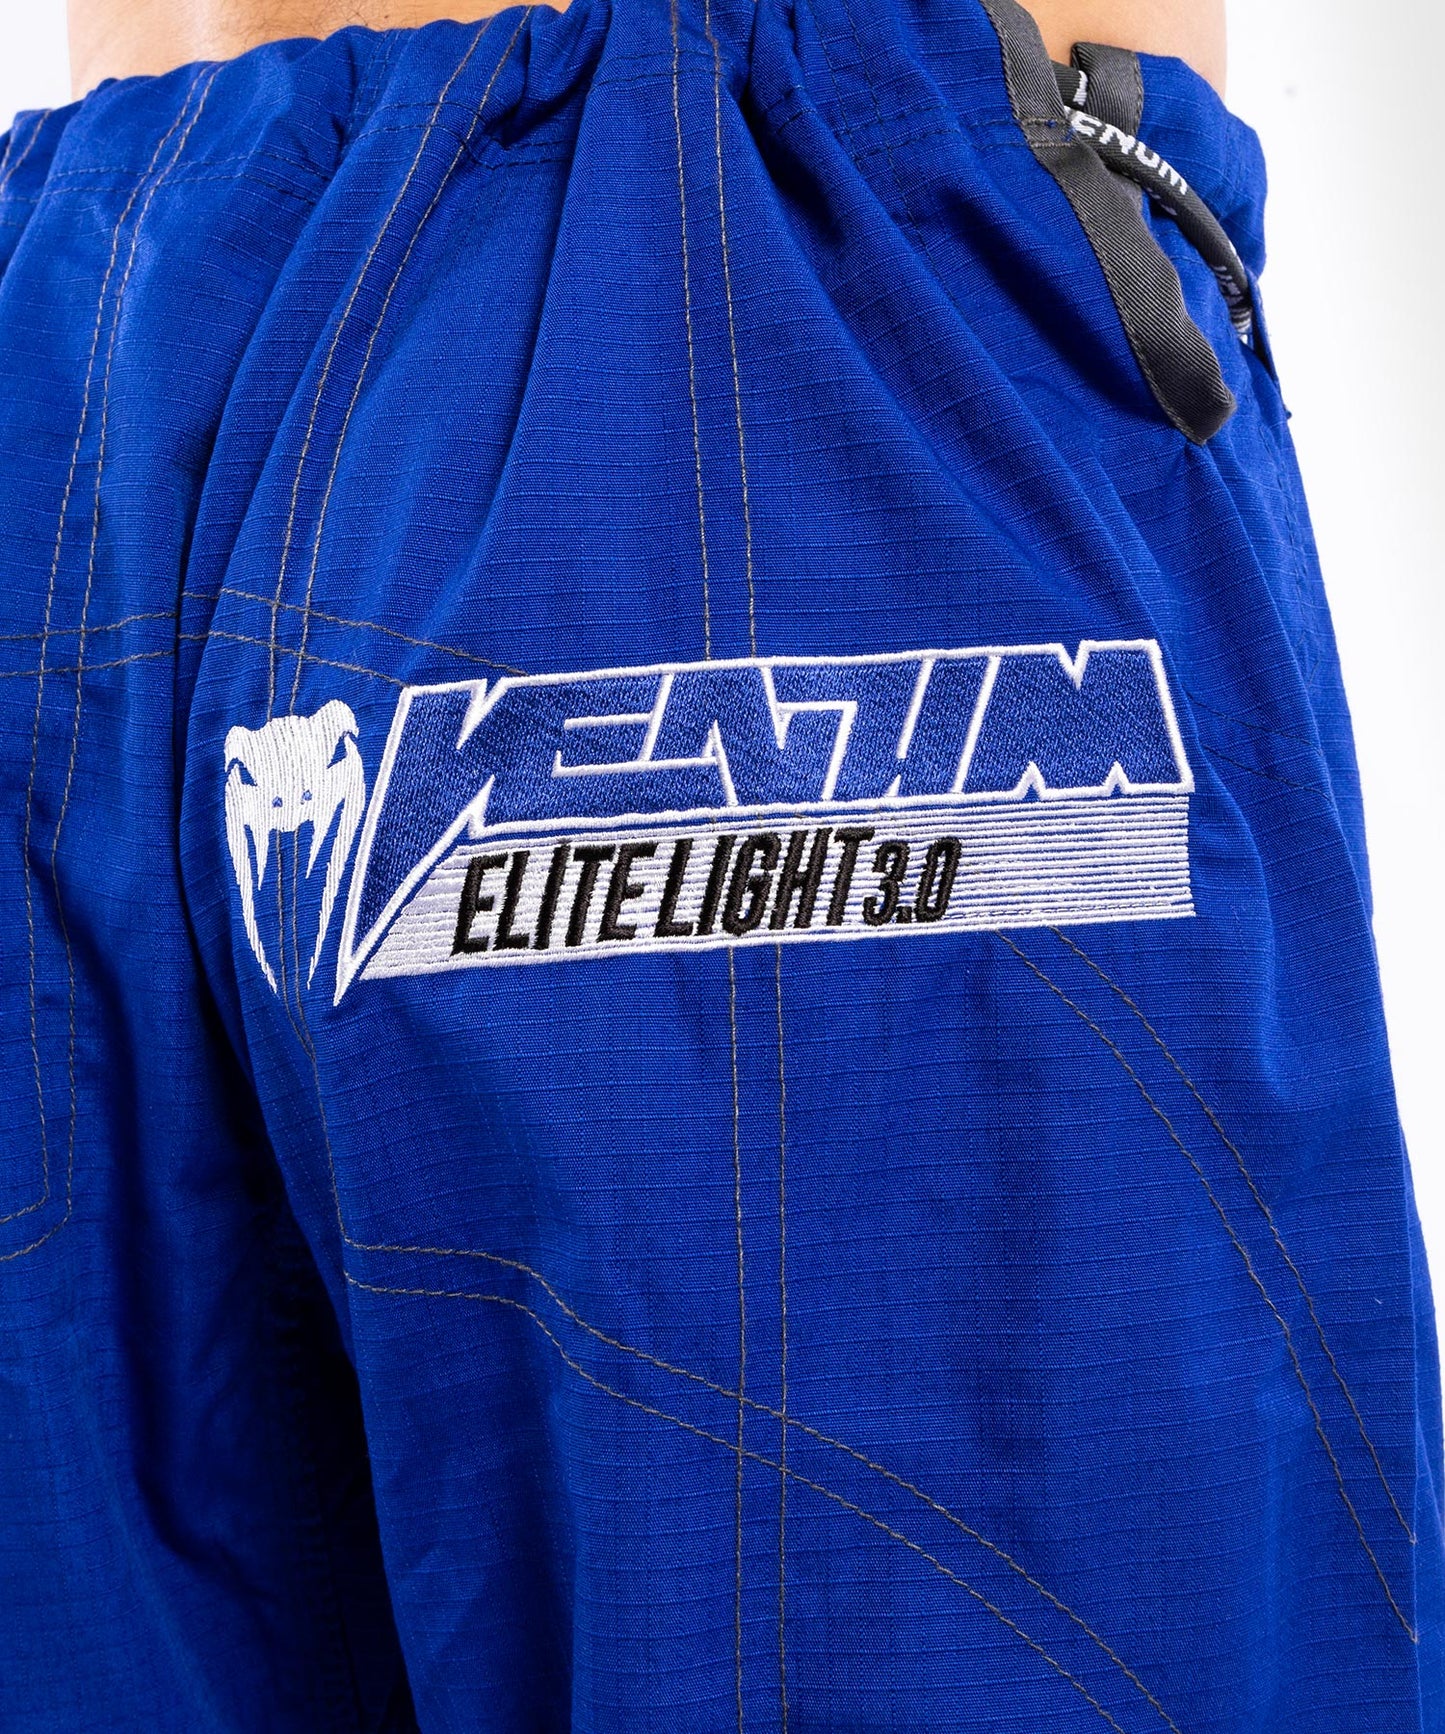 Venum Elite Light 3.0 BJJ Gi - Blue